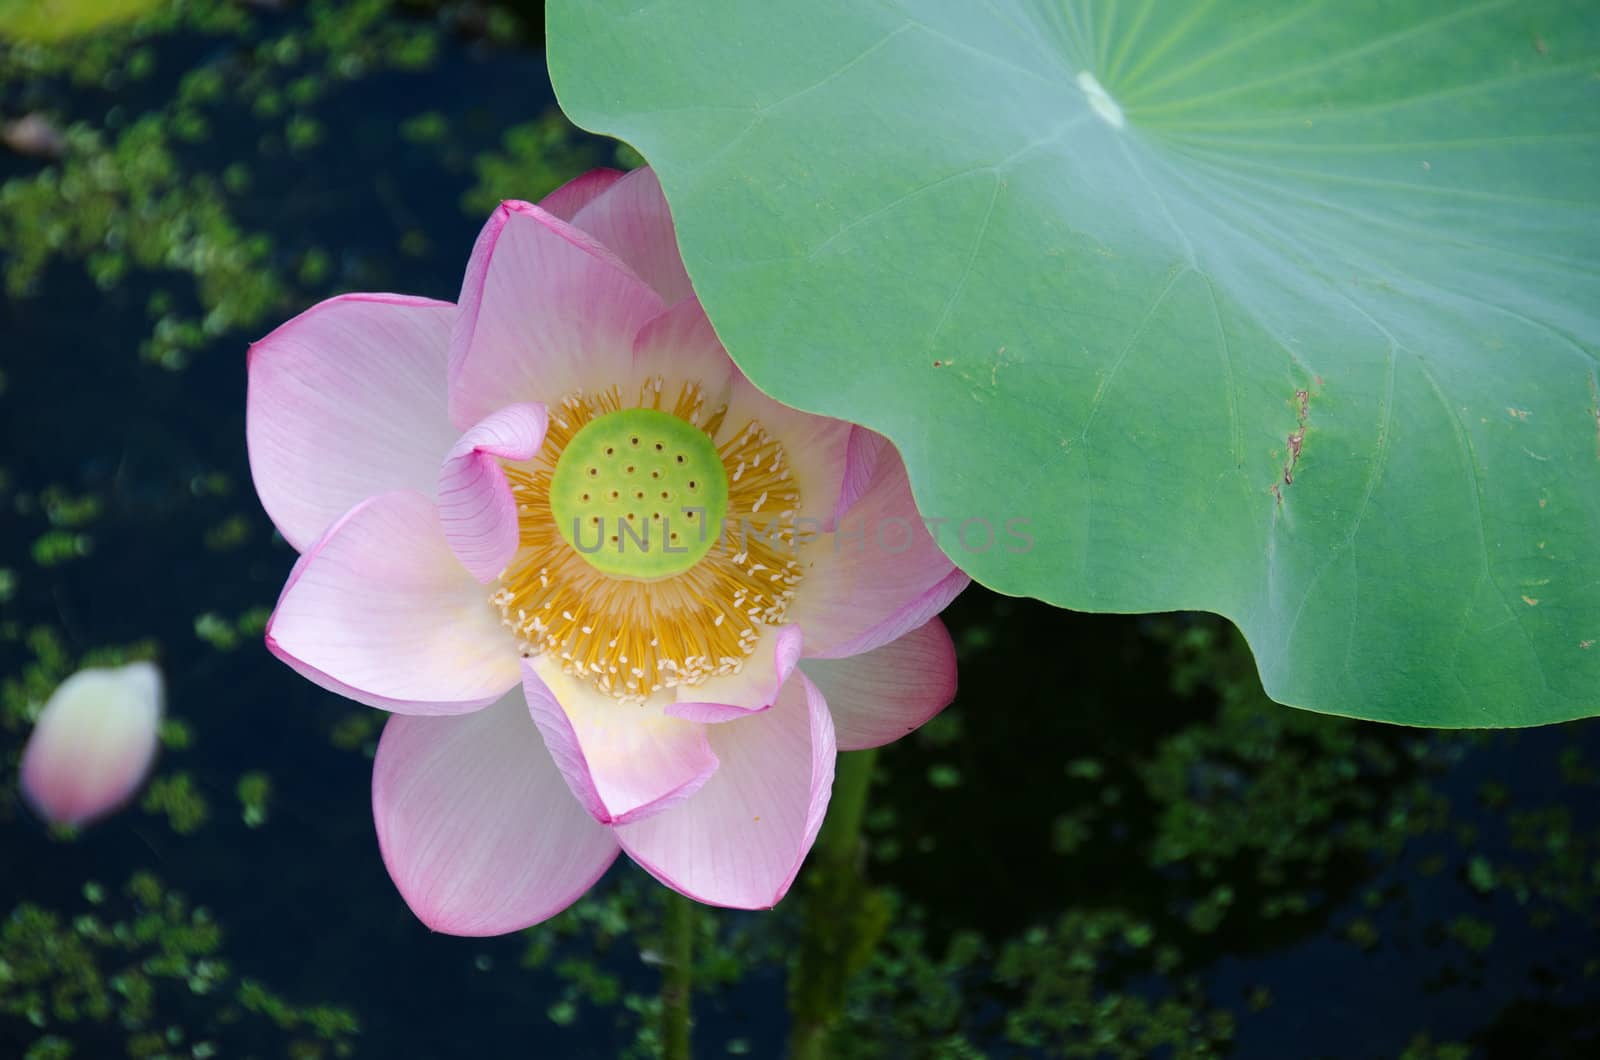 Detail of a beautiful pink lotus flower, Nelumbo nucifera